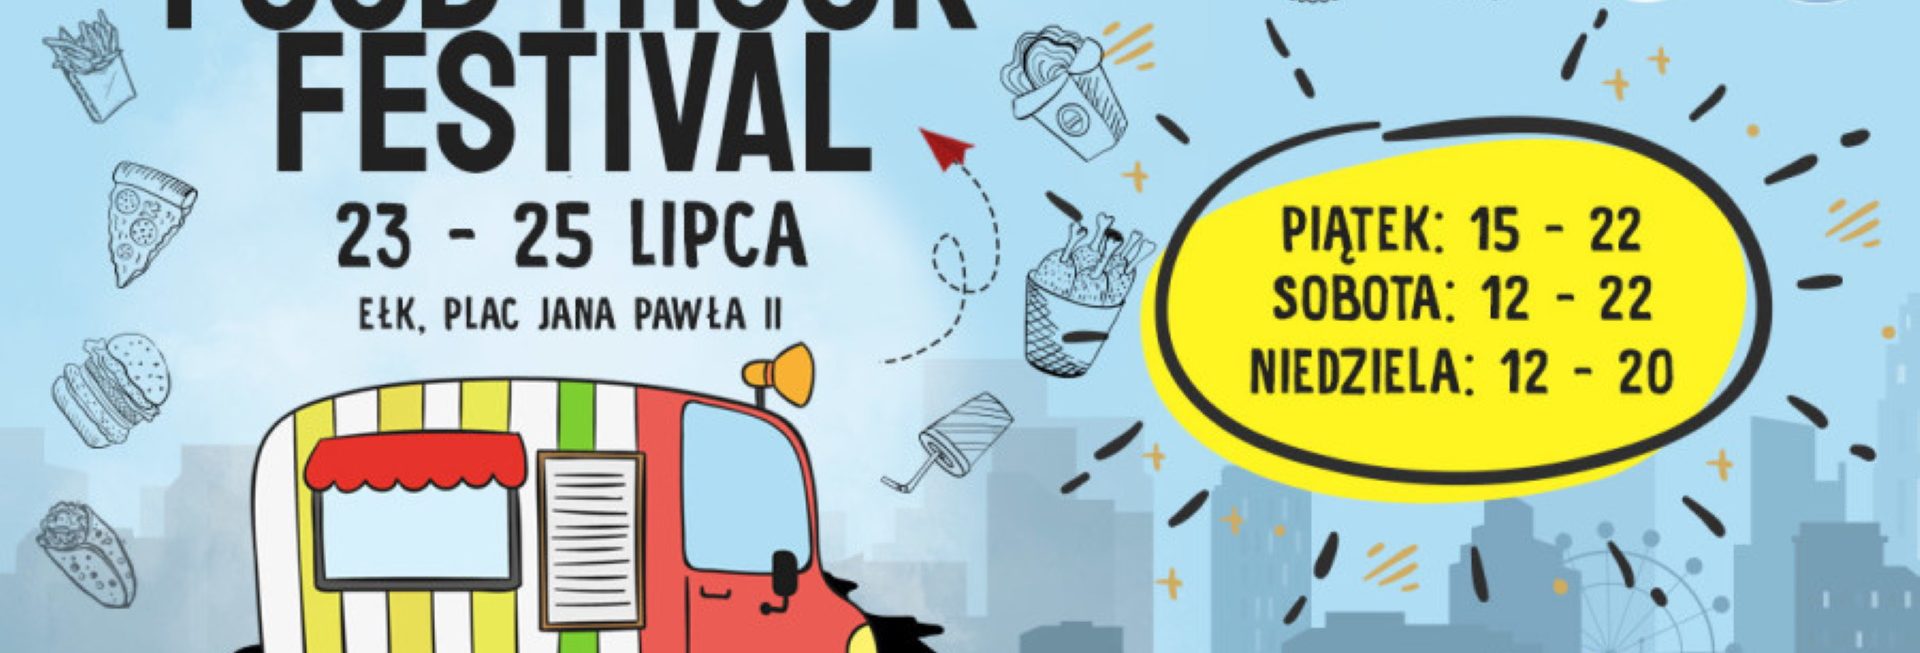 Plakat graficzny zapraszający do Ełku na Food Truck Festival - Ełk 2021. Na plakacie narysowany Food Truck oraz napisy.